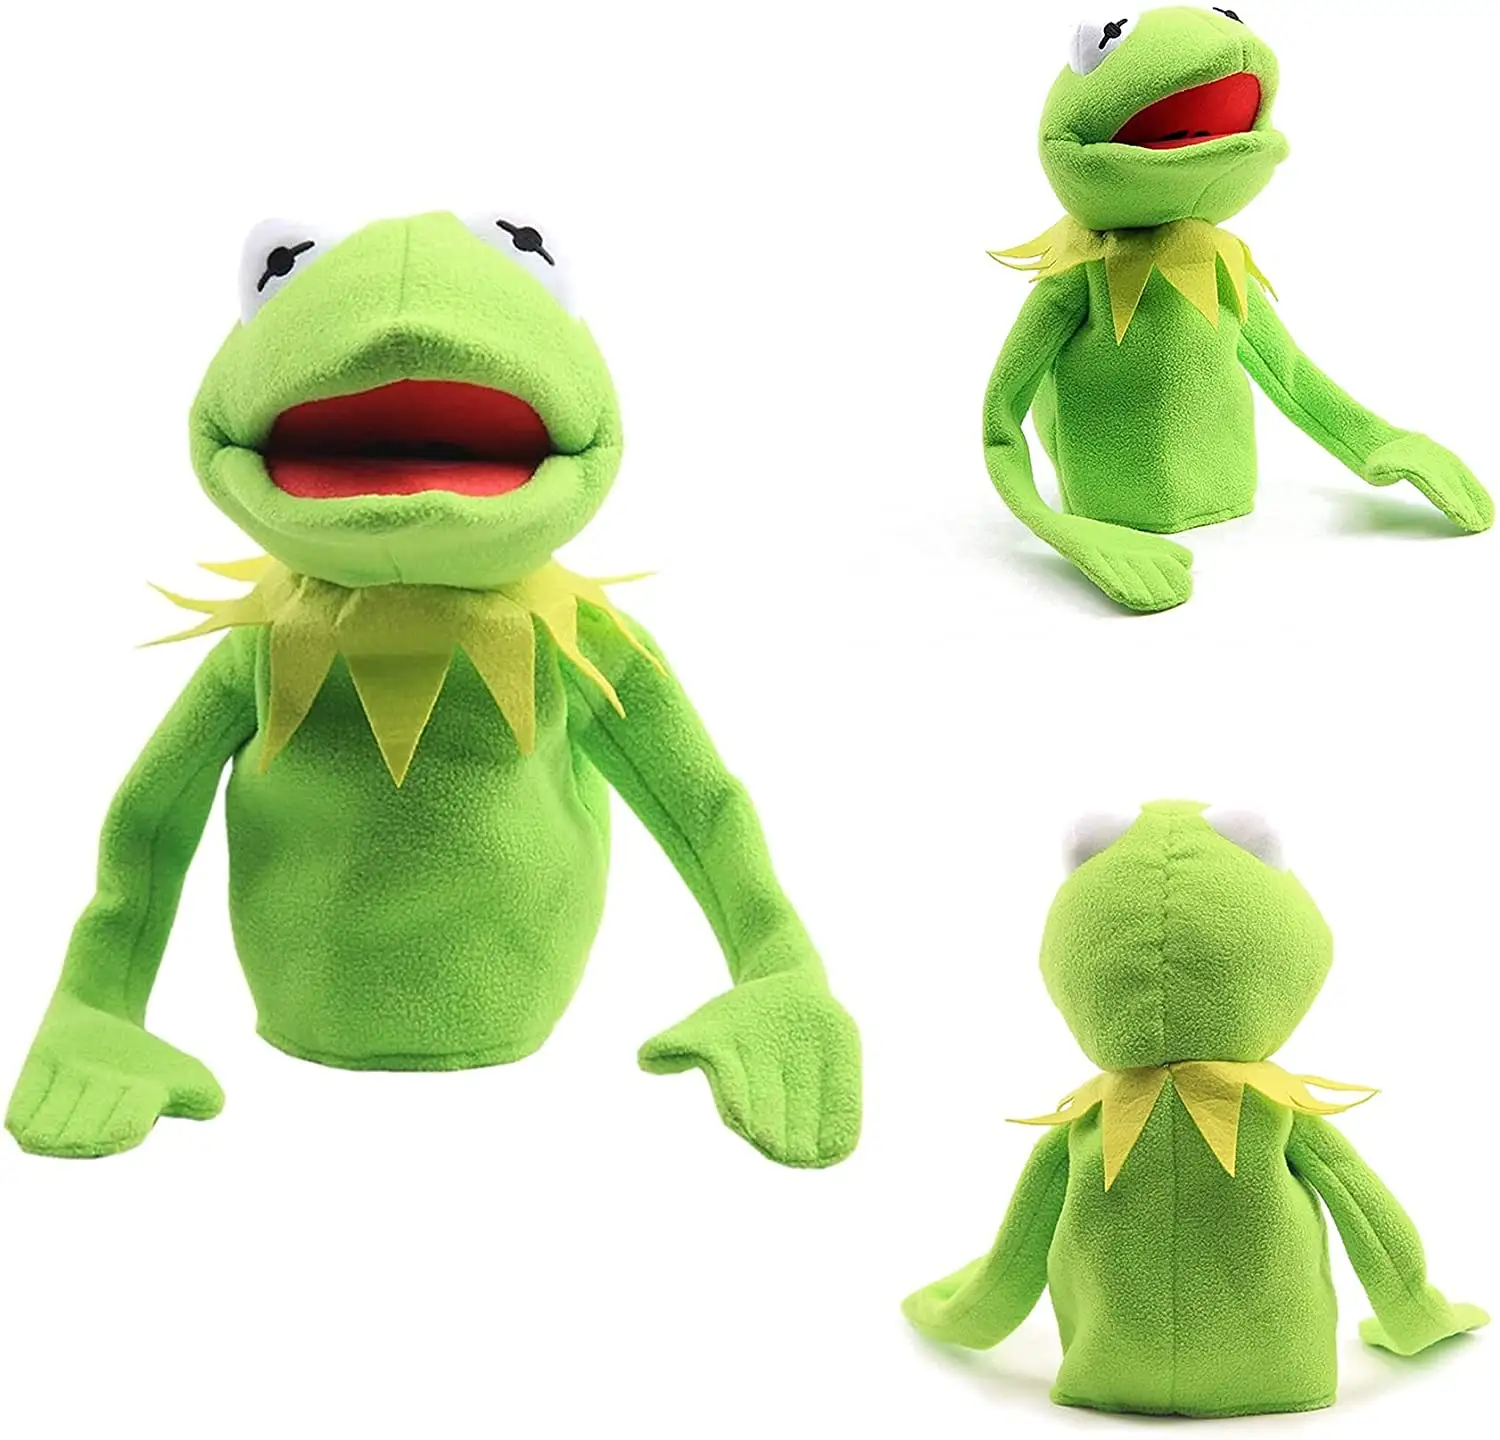 Marionnette à main de grenouille verte personnalisée, jouet en peluche de grenouille d'interaction Parent-enfant, cadeau créatif d'anniversaire pour garçons et filles